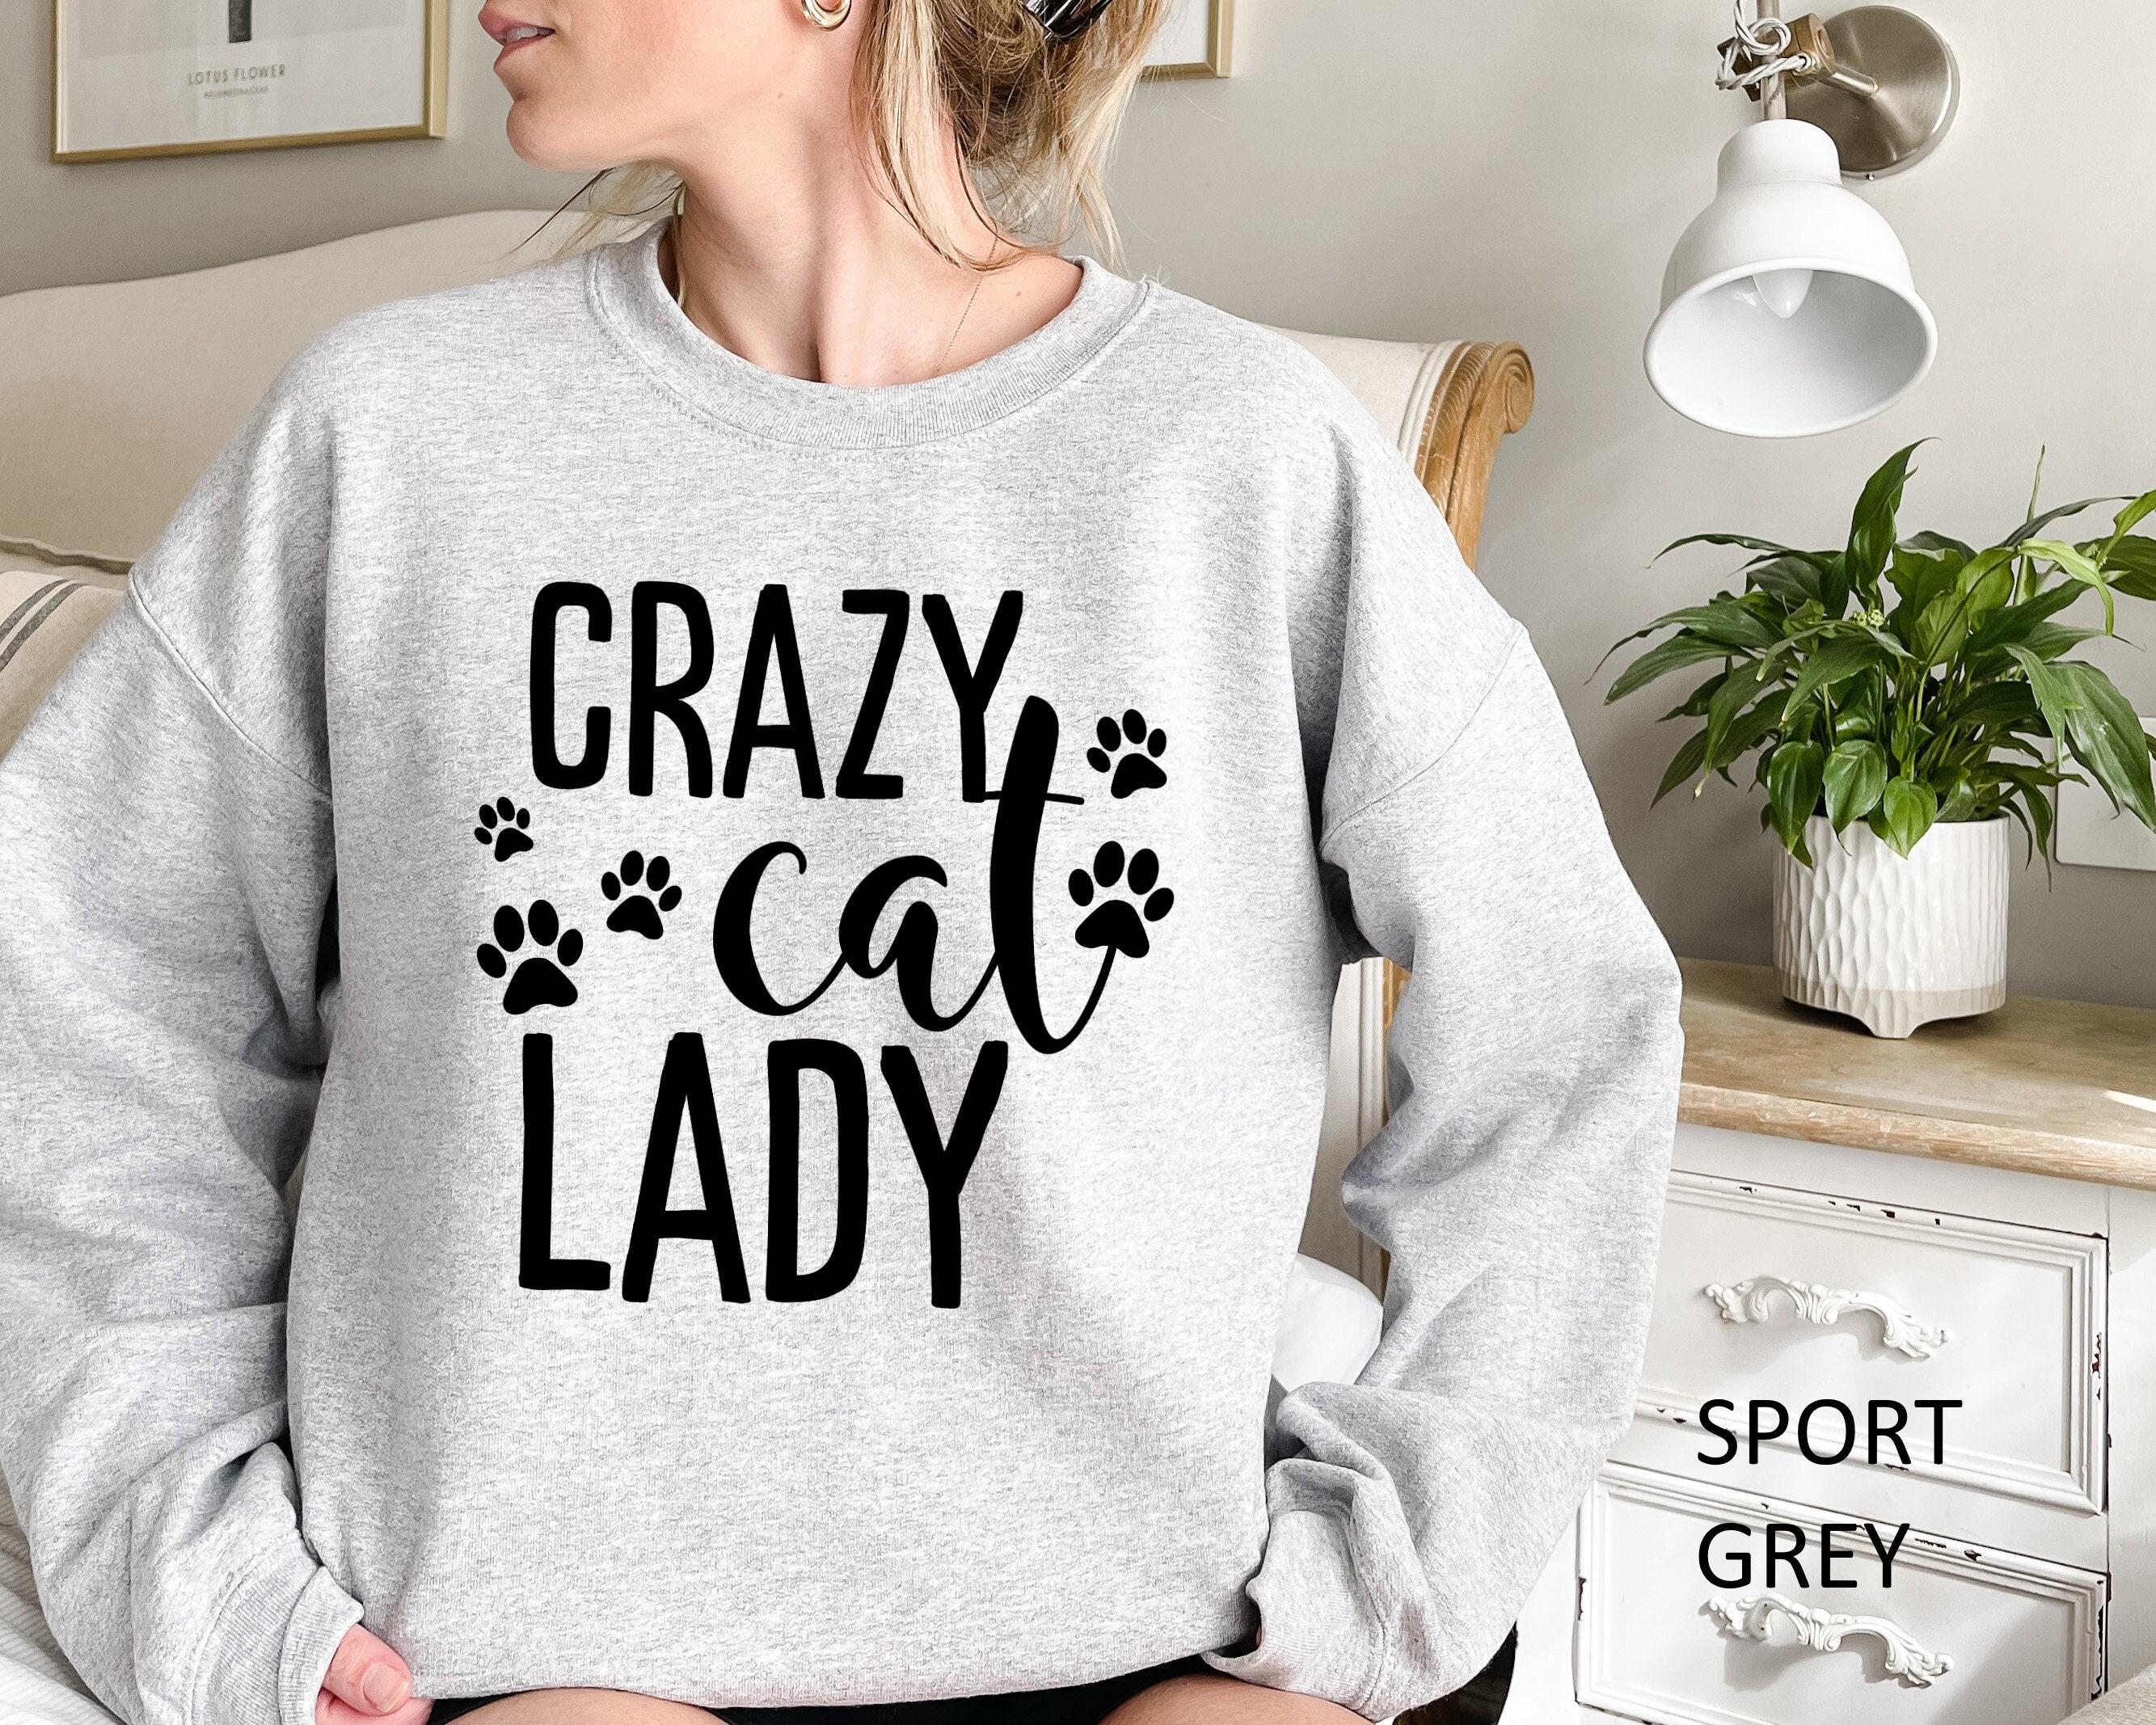 Kleding Meisjeskleding Sweaters Pullovers Meisjes Kids Childs Funny Crazy Cat Girl Gift Jumper Sweatshirt Tee Cat Lover 